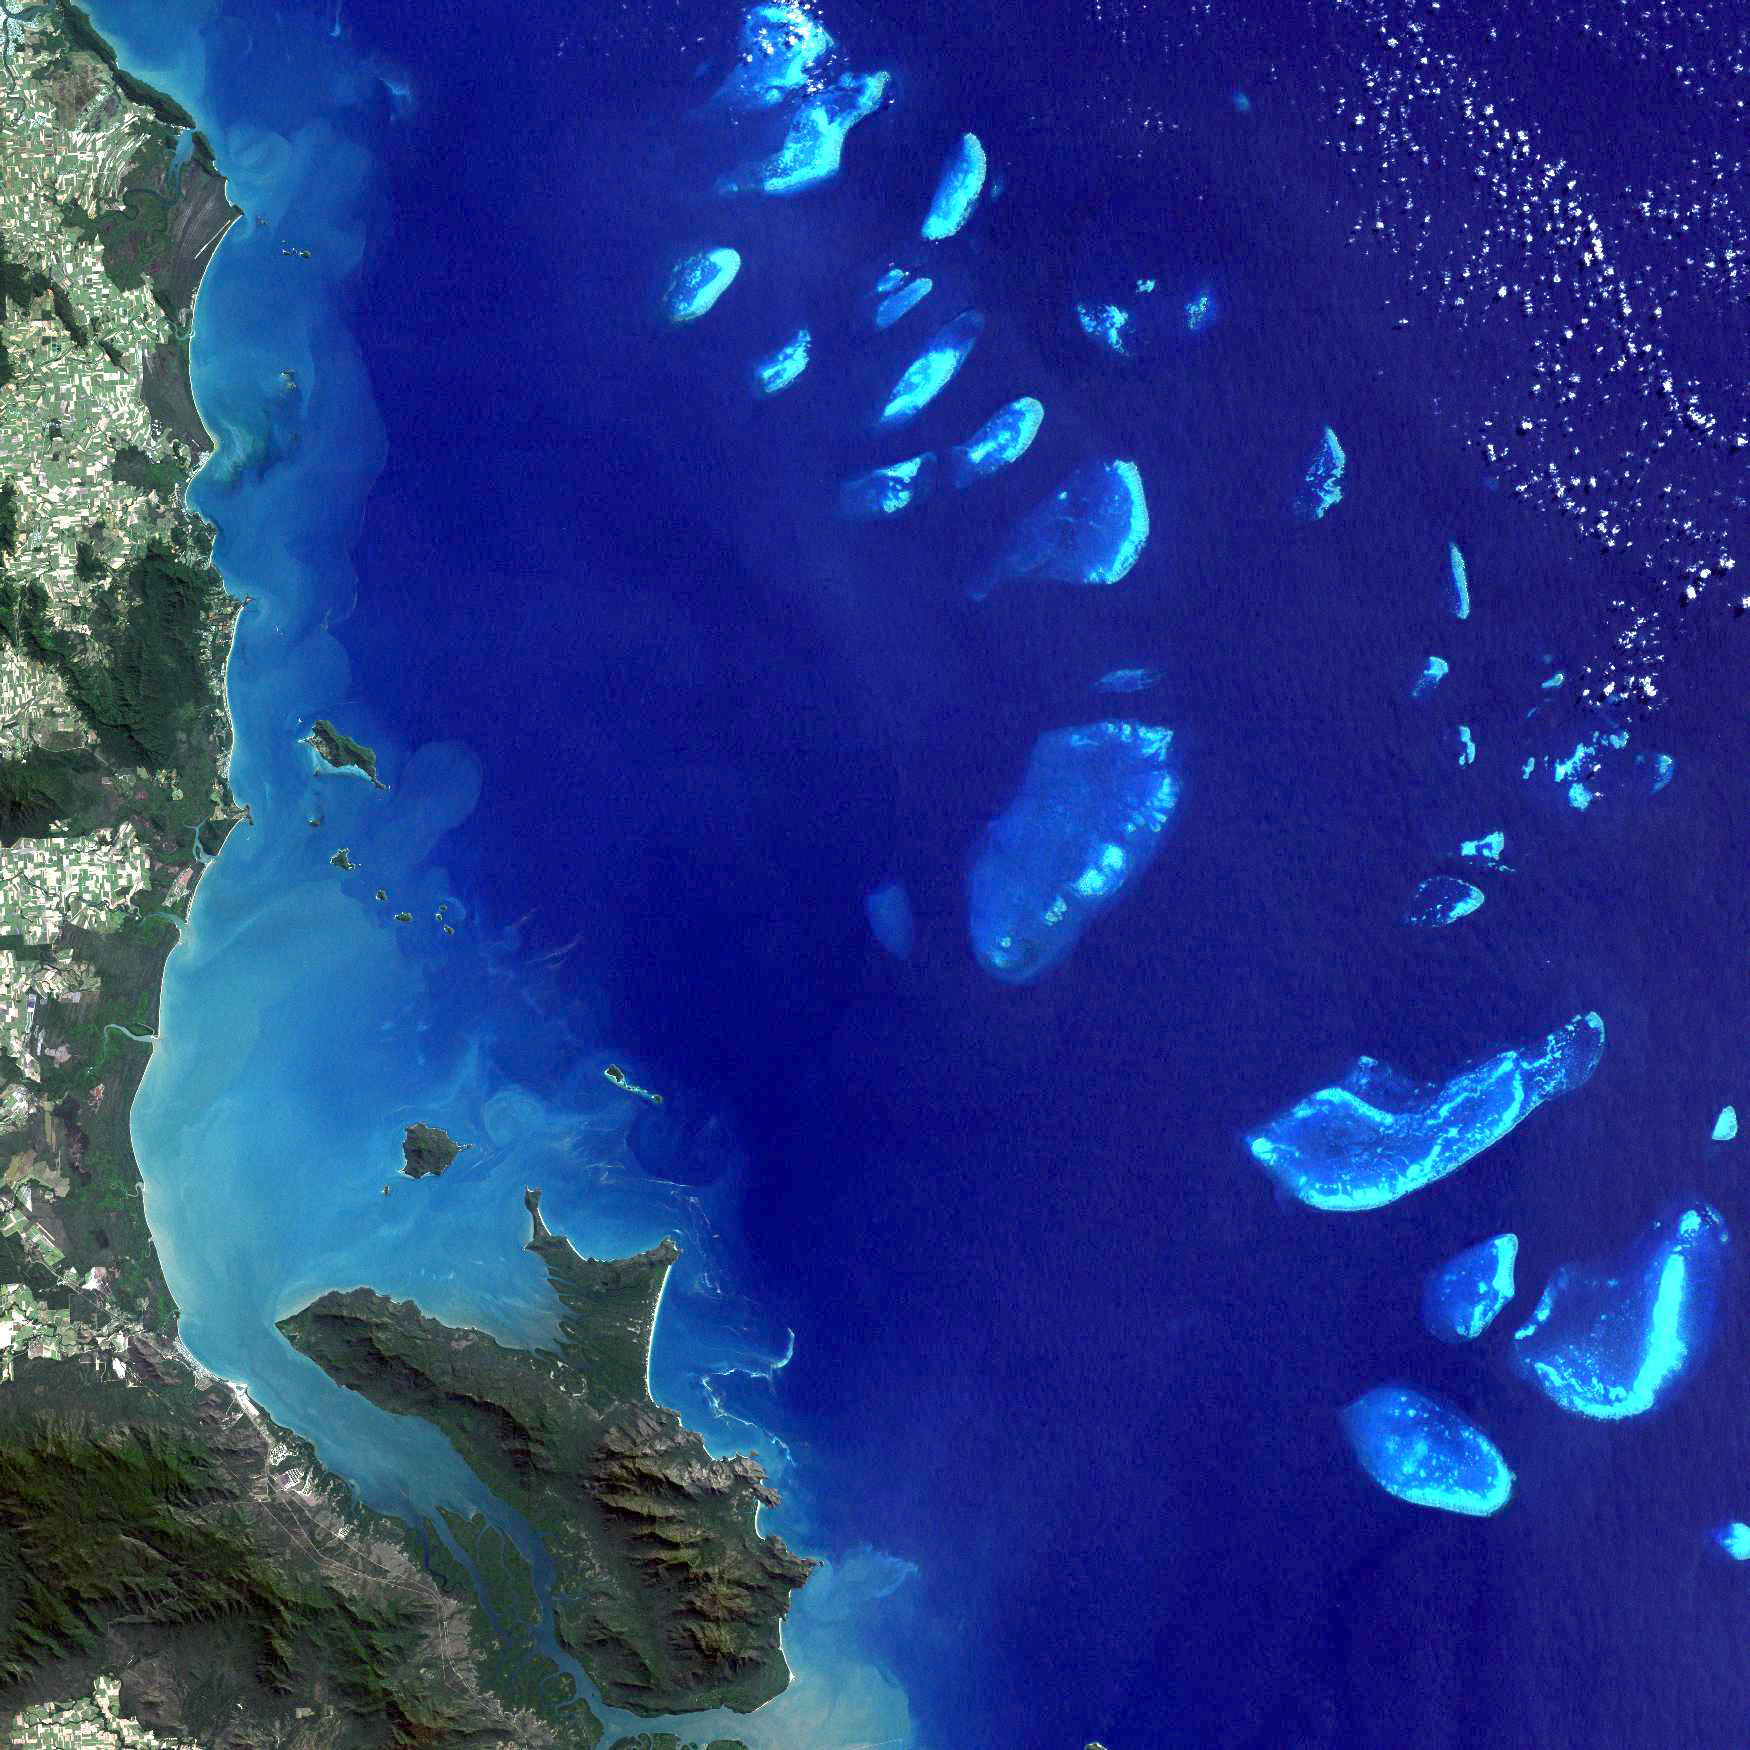 รวมกัน 101+ ภาพ Great Barrier Reef เกิดขึ้นได้อย่างไร ความละเอียด 2k, 4k